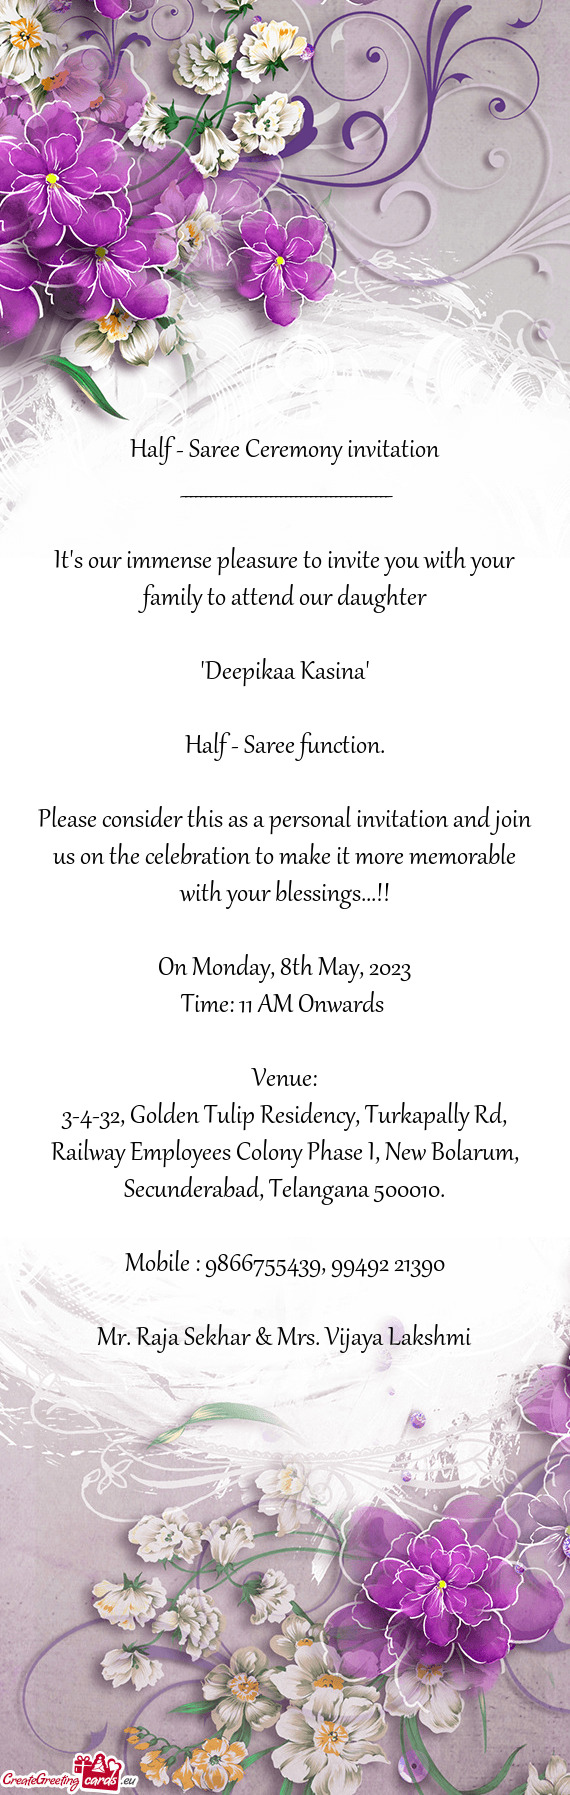 Half - Saree Ceremony invitation